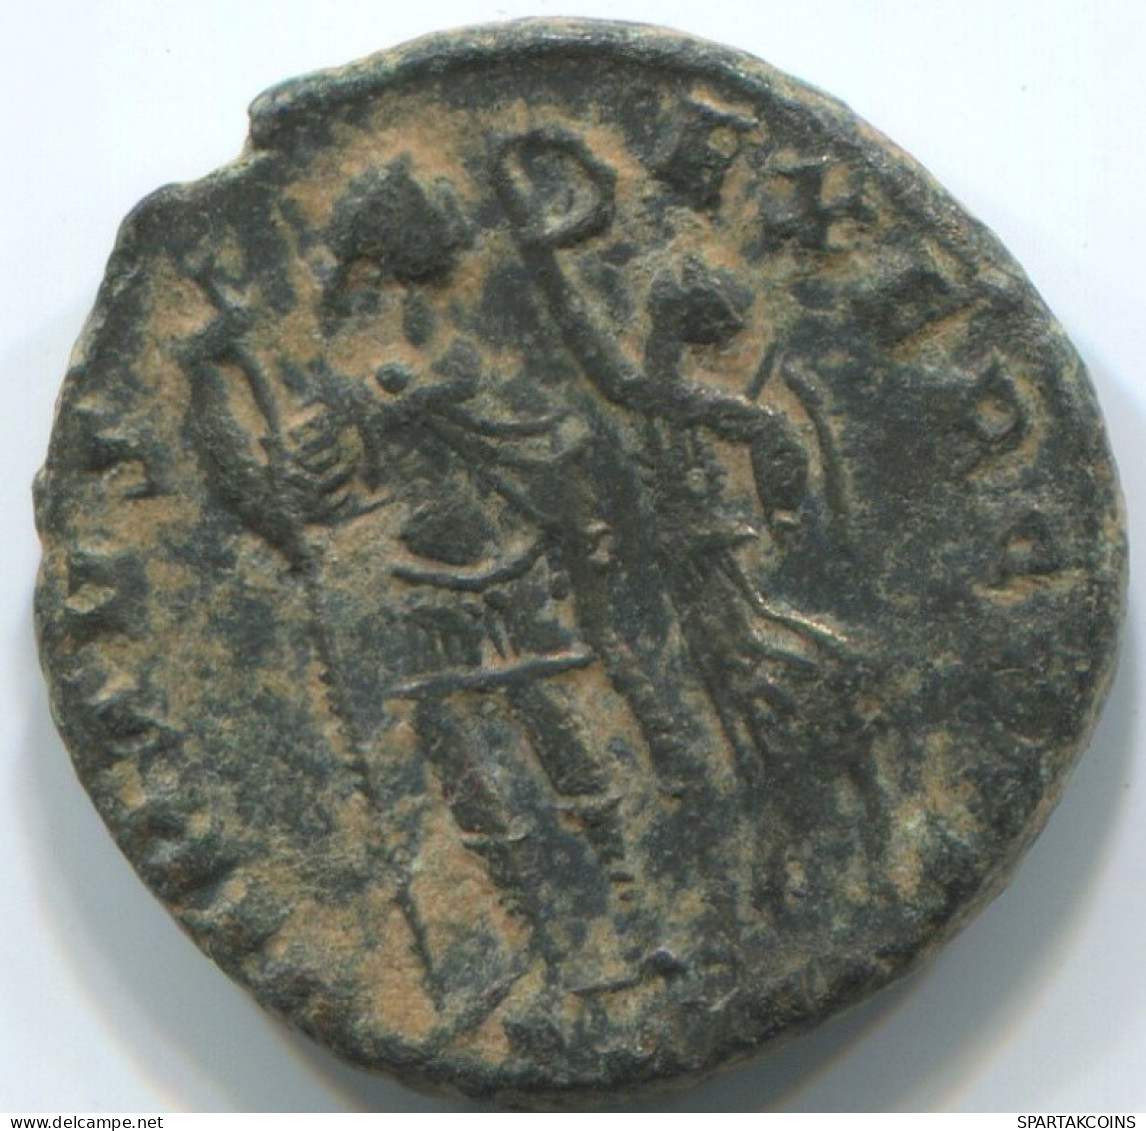 LATE ROMAN EMPIRE Coin Ancient Authentic Roman Coin 2.1g/16mm #ANT2383.14.U.A - El Bajo Imperio Romano (363 / 476)